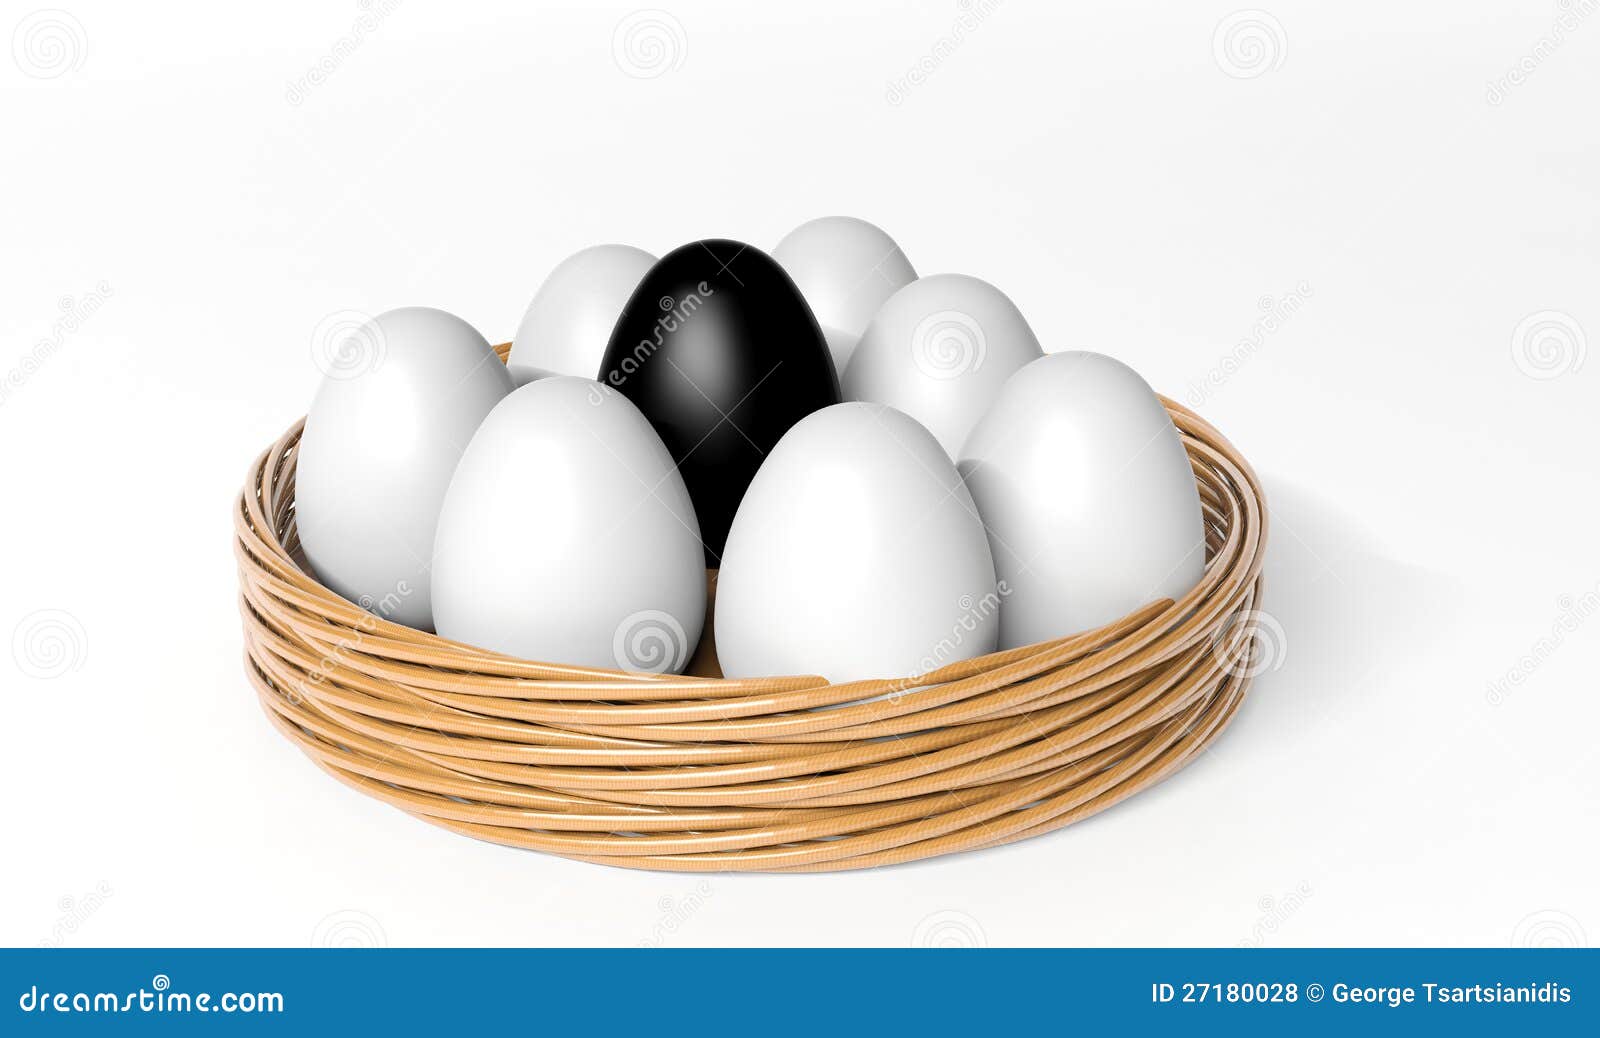 Яйцо стало черным. Темное яйцо среди белых. Черные яйца. Черное и белое яйцо. Пасхальное яйцо черное белое.